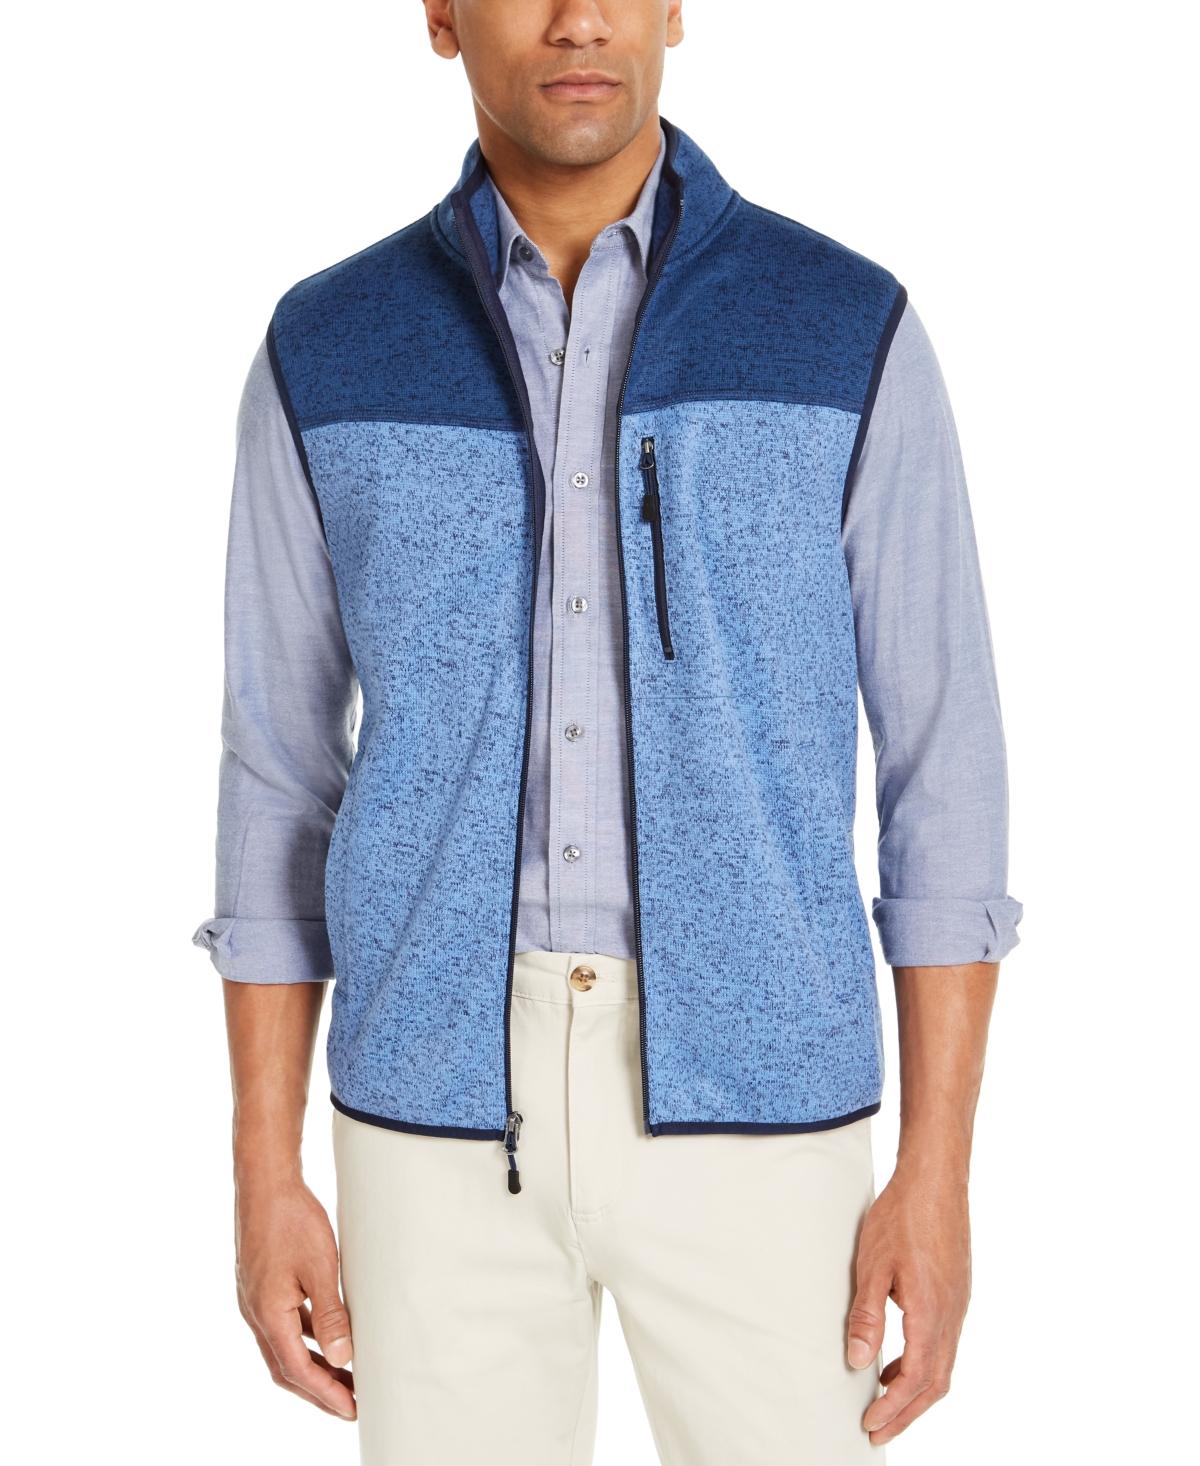 Men's Colorblock Fleece Sweater Vest, Created for Macy's - Navy Blue